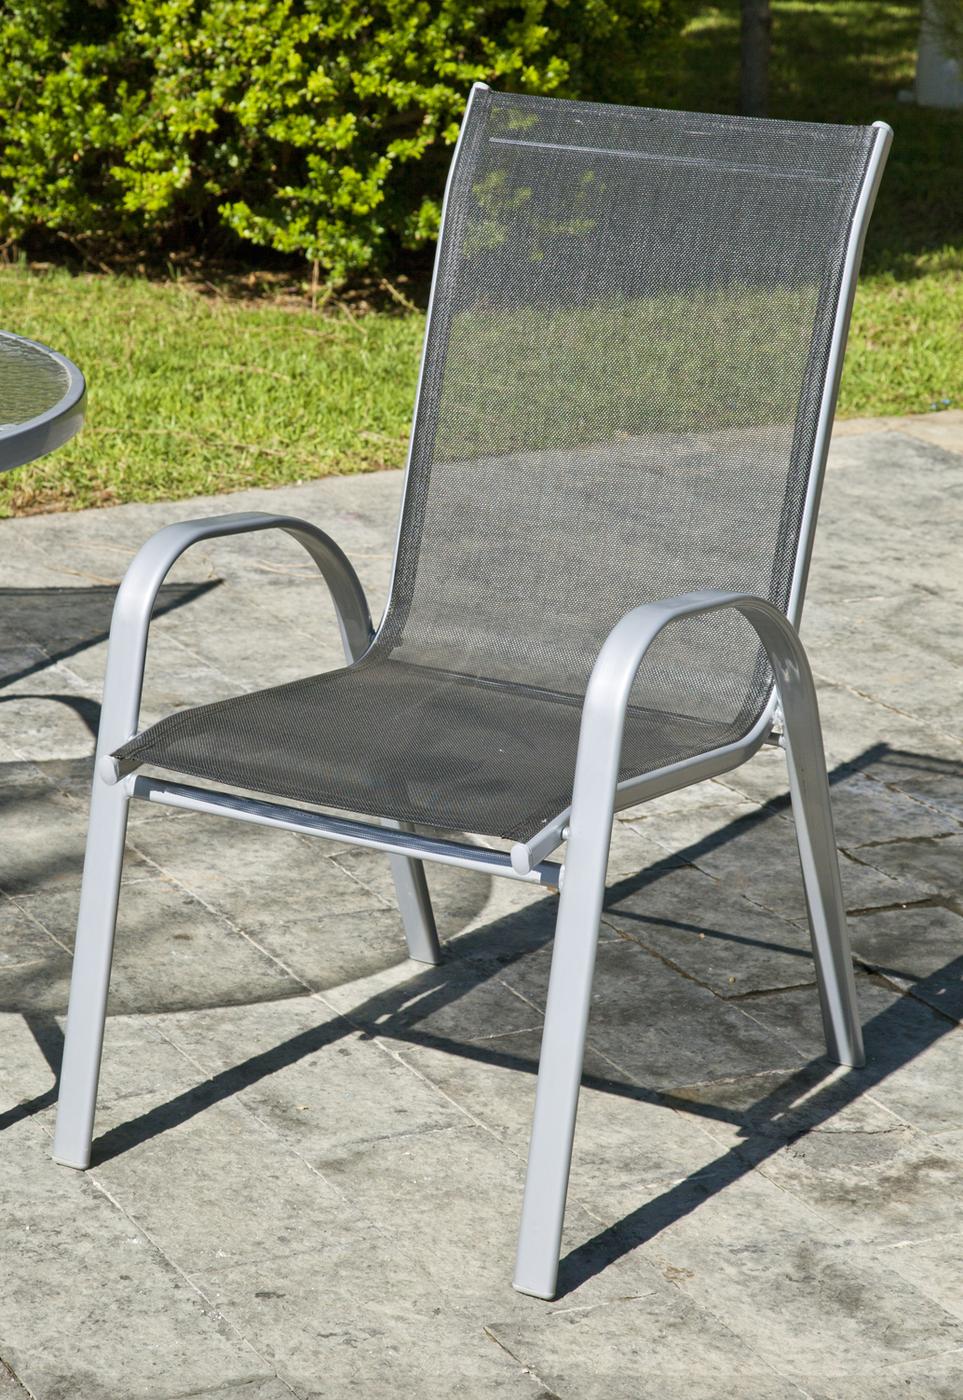 Conjunto Acero Seúl-21 - Conjunto de acero inoxidable color plata: mesa auxiliar con tablero de cristal templado + 2 sillones apilables de acero y textilen + reposapies